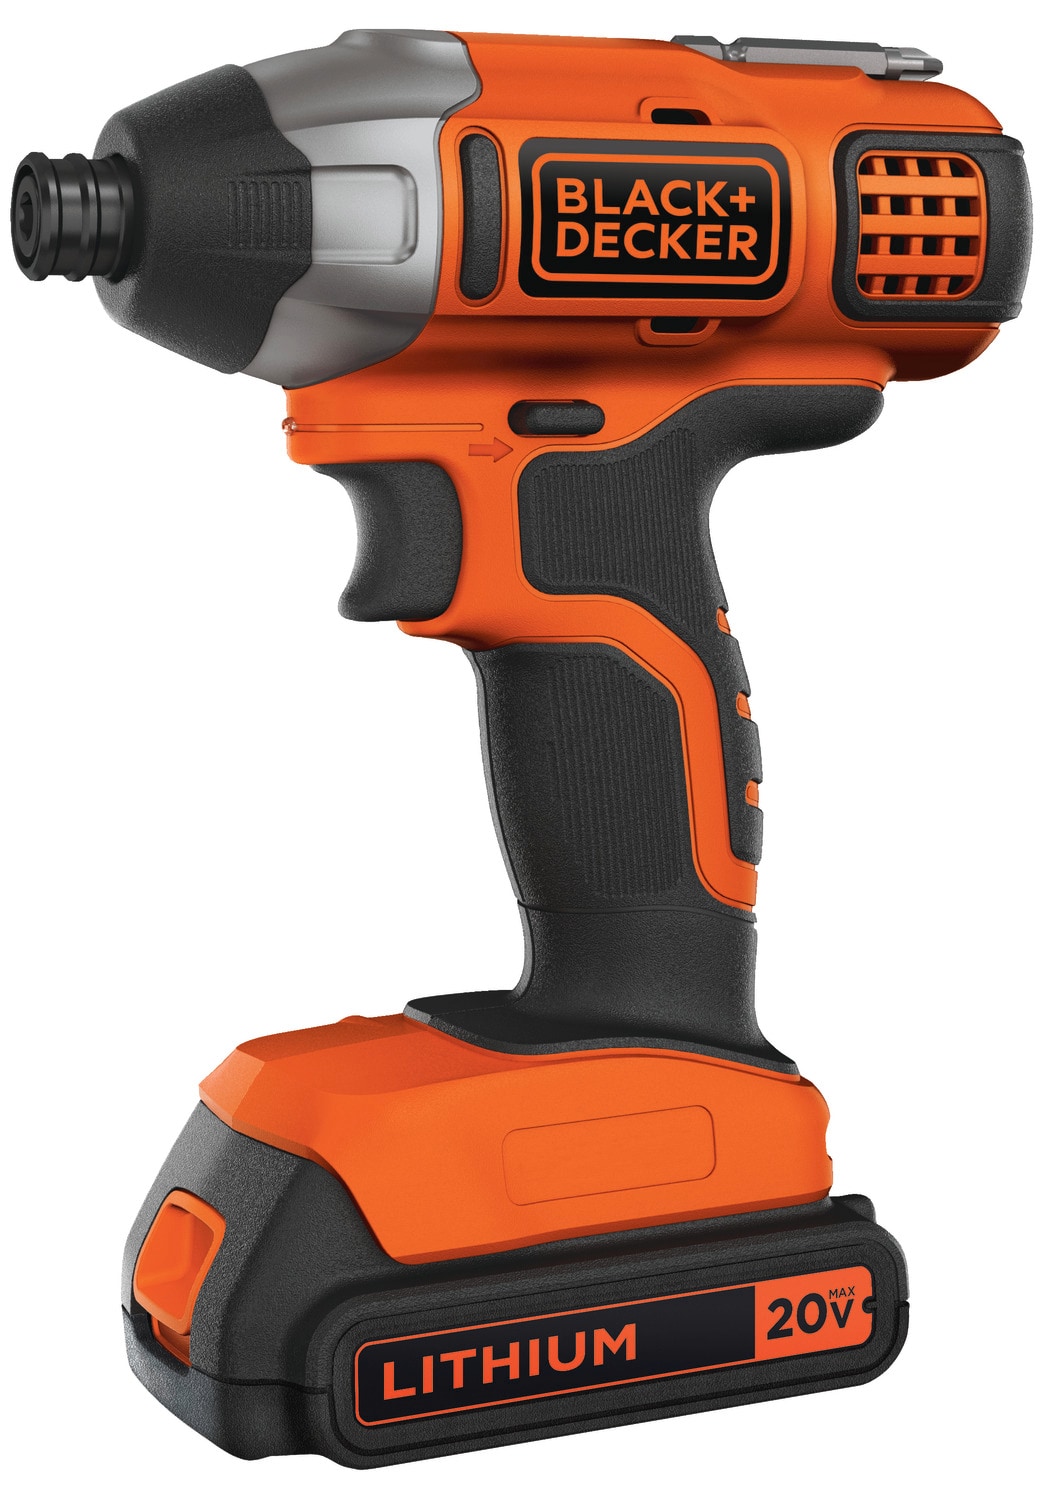 BLACK+DECKER 20V Max Cordless Drill/Driver W/ 30-Piece Accessories - New